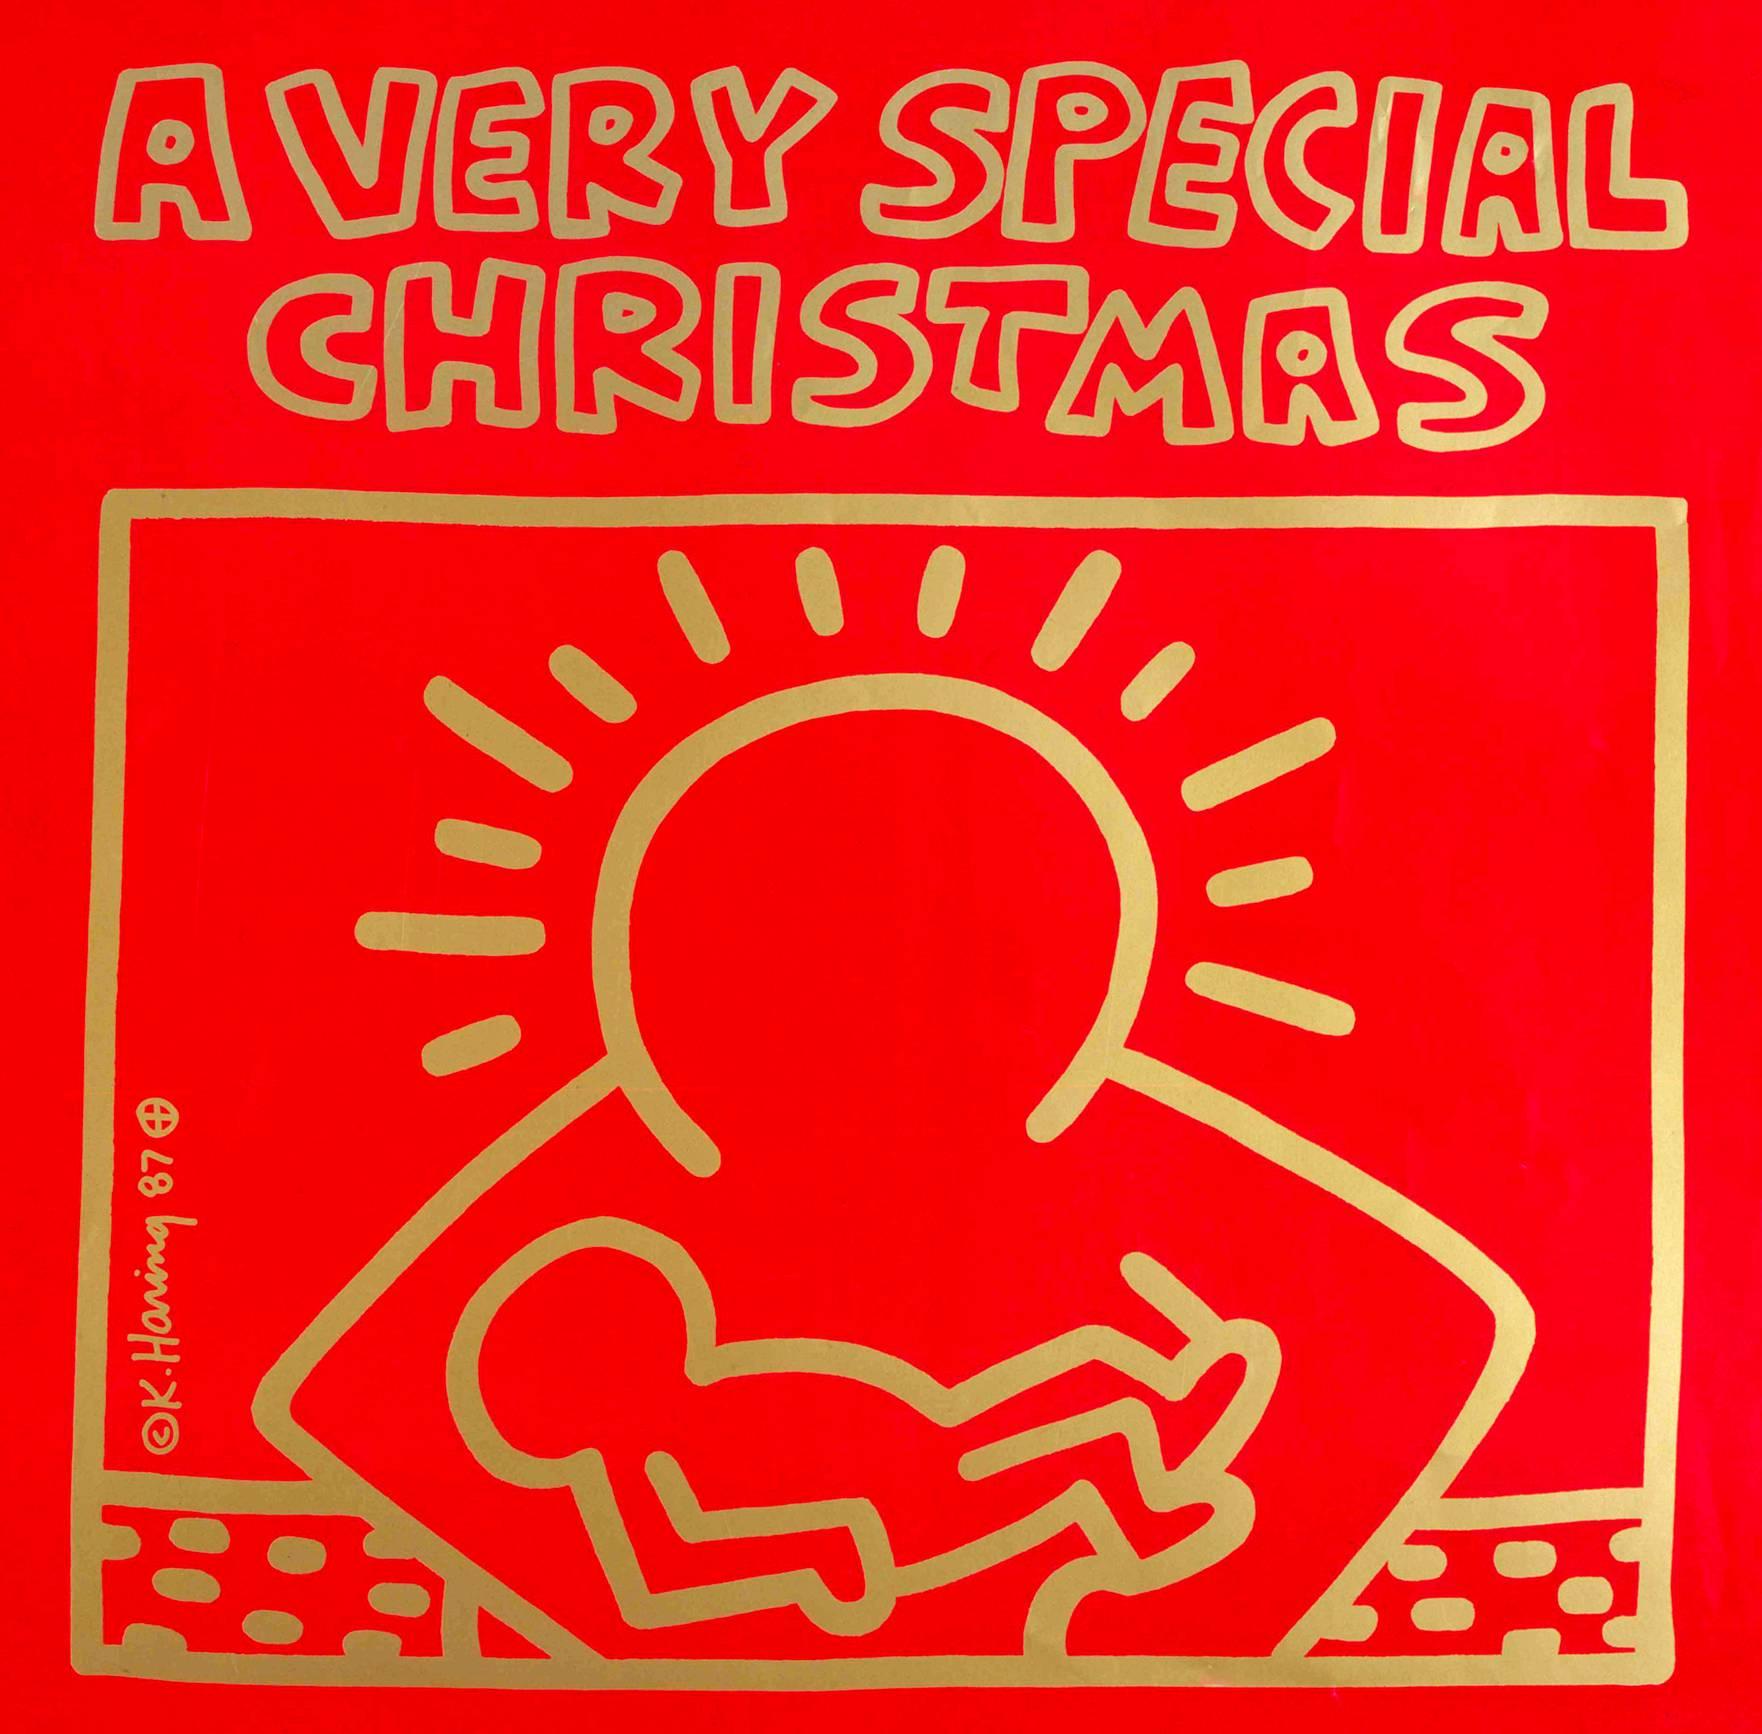 Original 1987 Vinyl Record Art by Keith Haring :

Lithographie Off-Set sur la pochette du disque vinyle ; feuille d'or gravée.
12 x 12 pouces.
Signature de Haring imprimée au milieu en bas à gauche.

Très bon état général vintage.

Comprend le